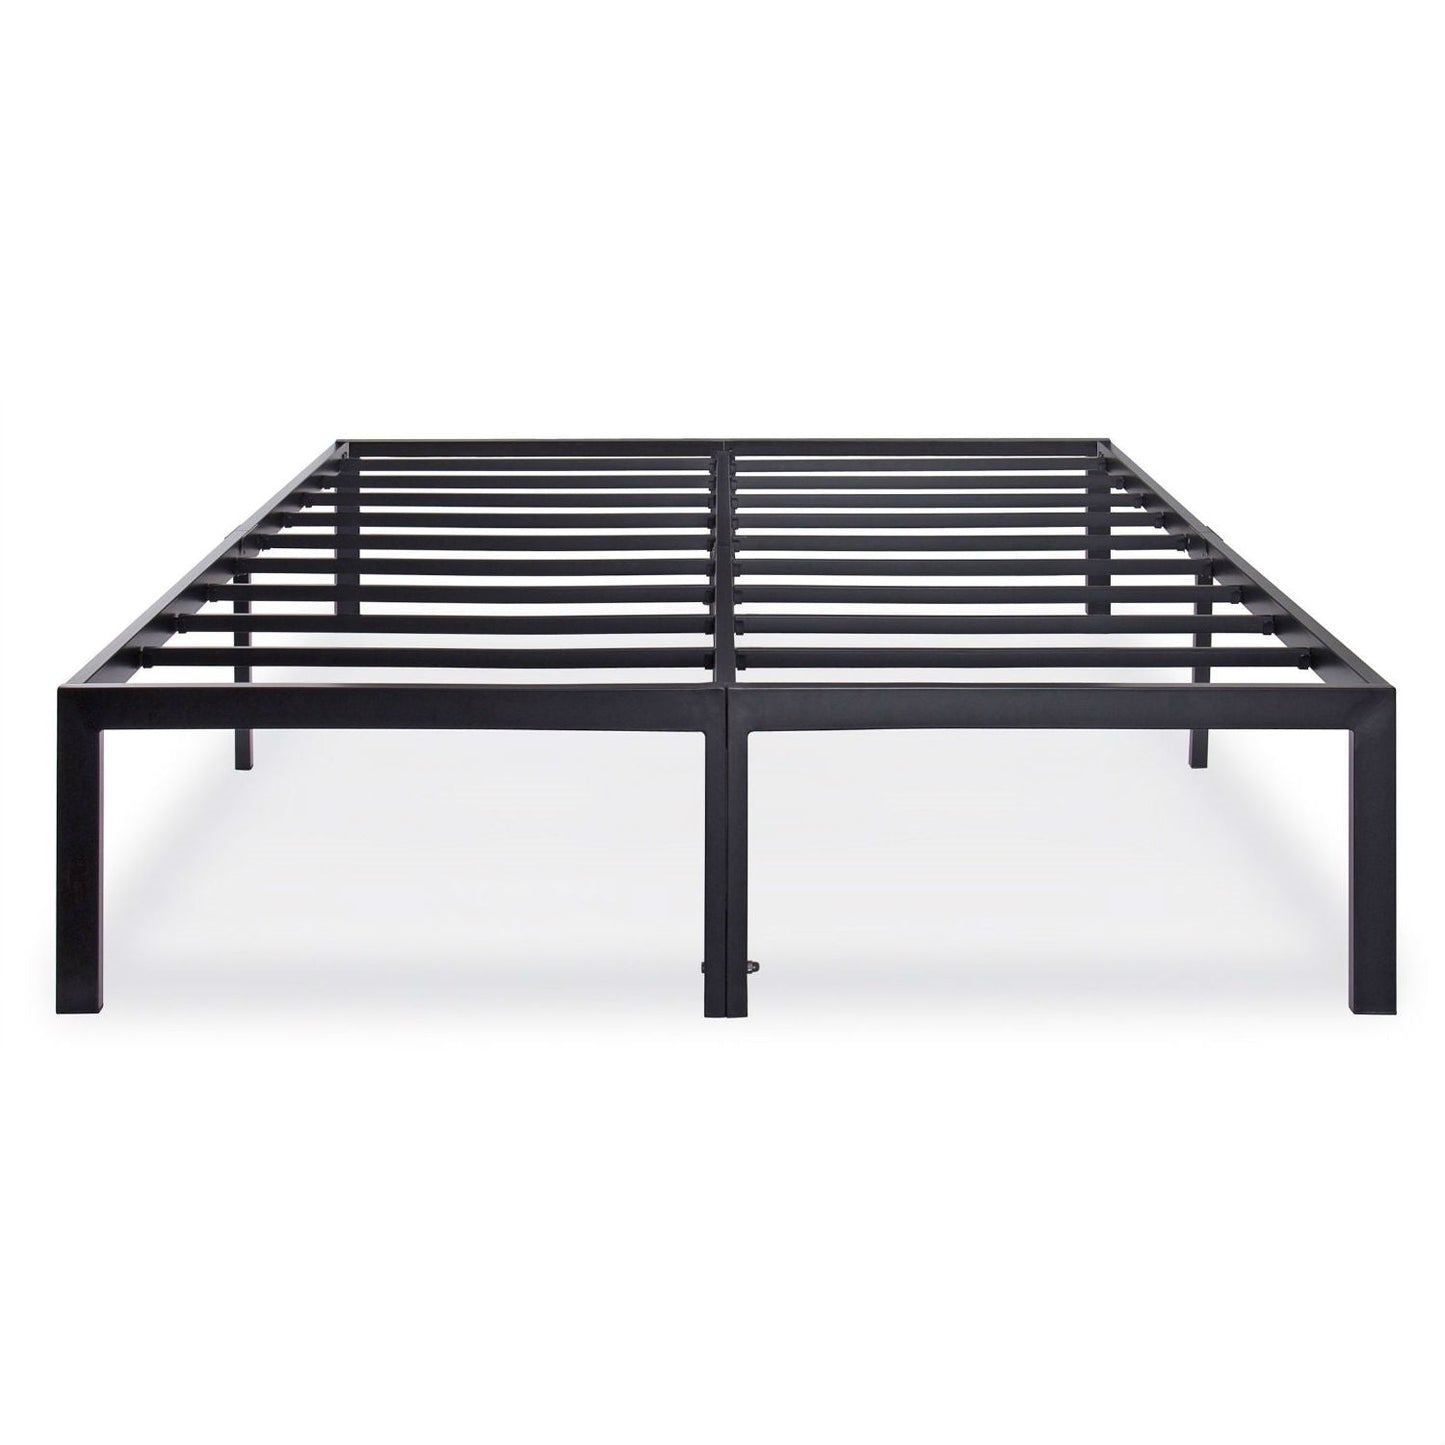 Bedroom > Bed Frames > Platform Beds - Full Size Heavy Duty Metal Platform Bed Frame - 2,000 Lb Weight Capacity